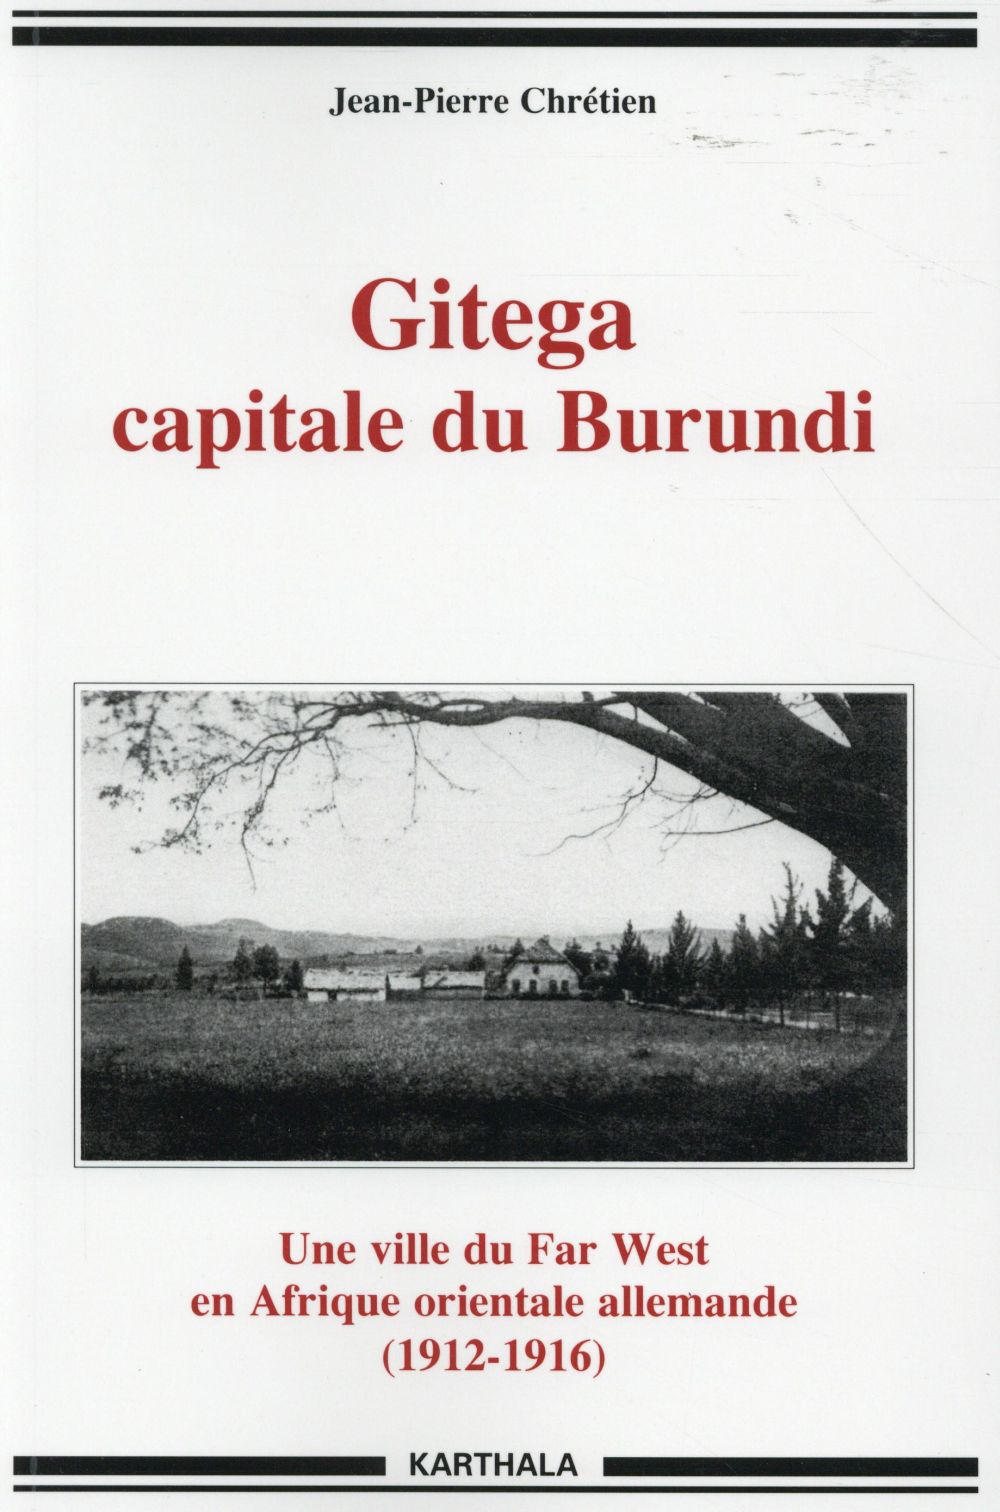 GITEGA, CAPITALE DU BURUNDI - UNE VILLE DU FAR WEST EN AFRIQUE ORIENTALE ALLEMANDE, 1912-1916